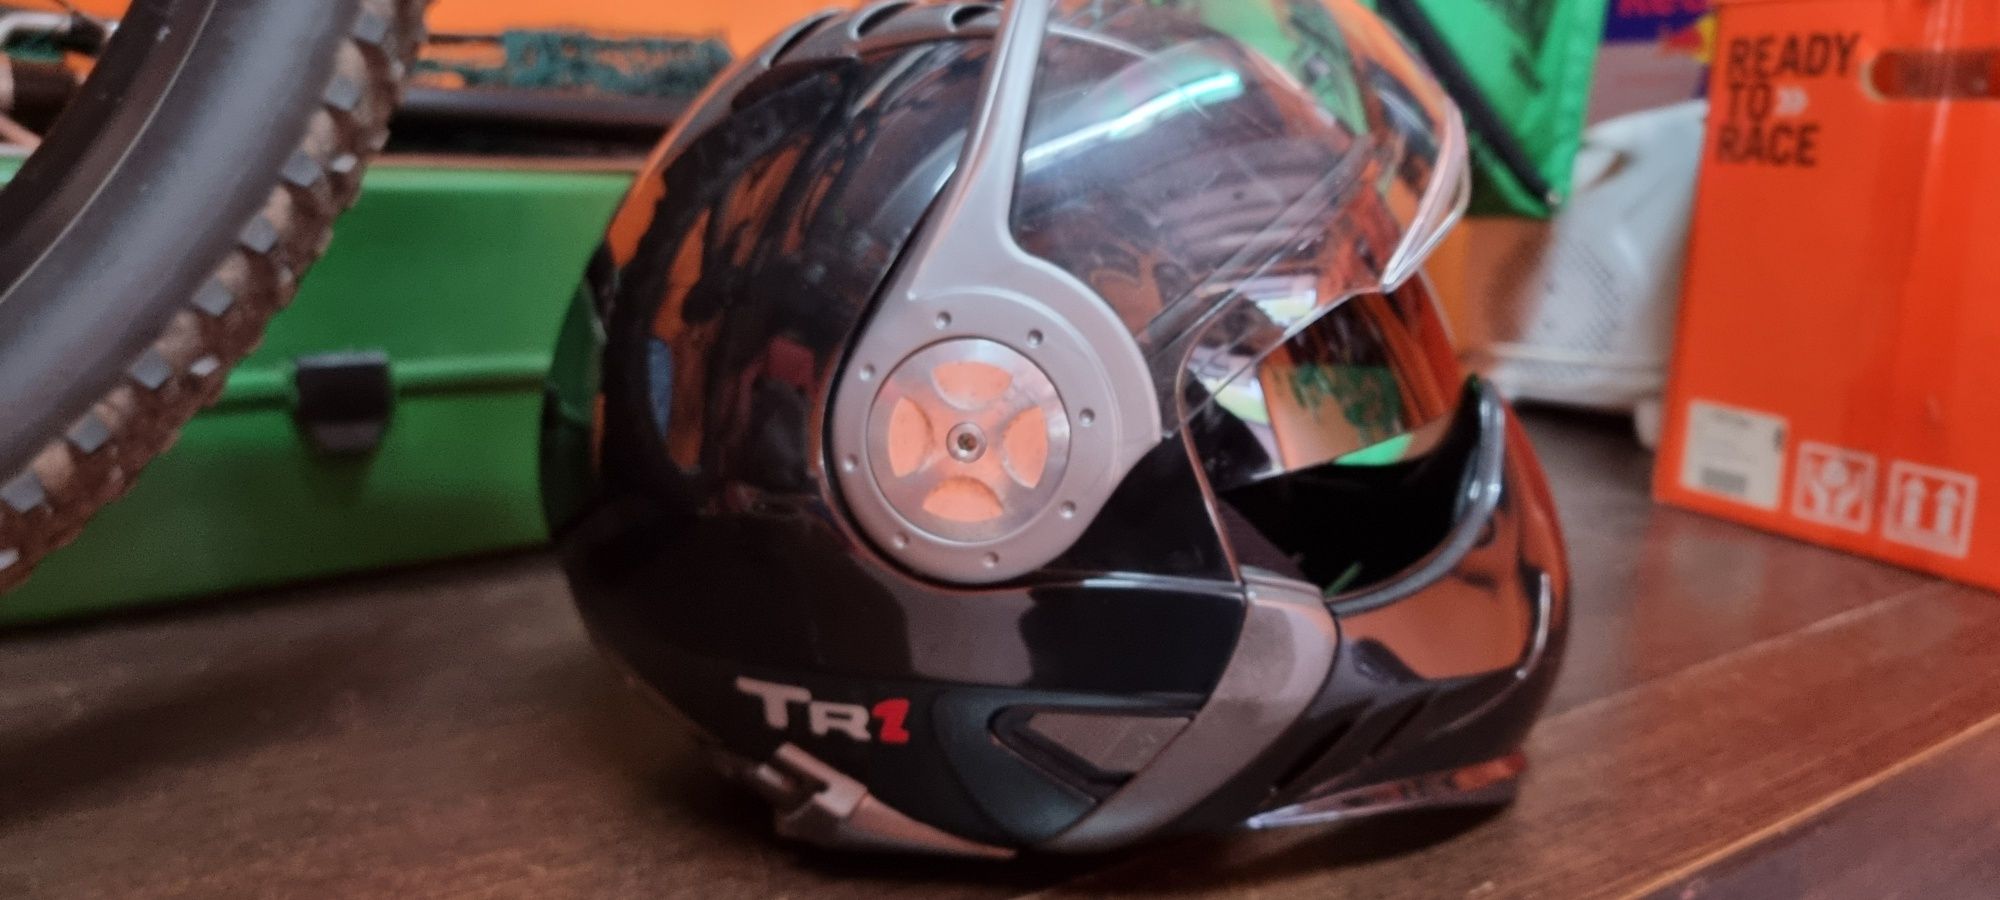 Kask motocyklowy Airoh Tr1 Helmet rozm. L 59-60